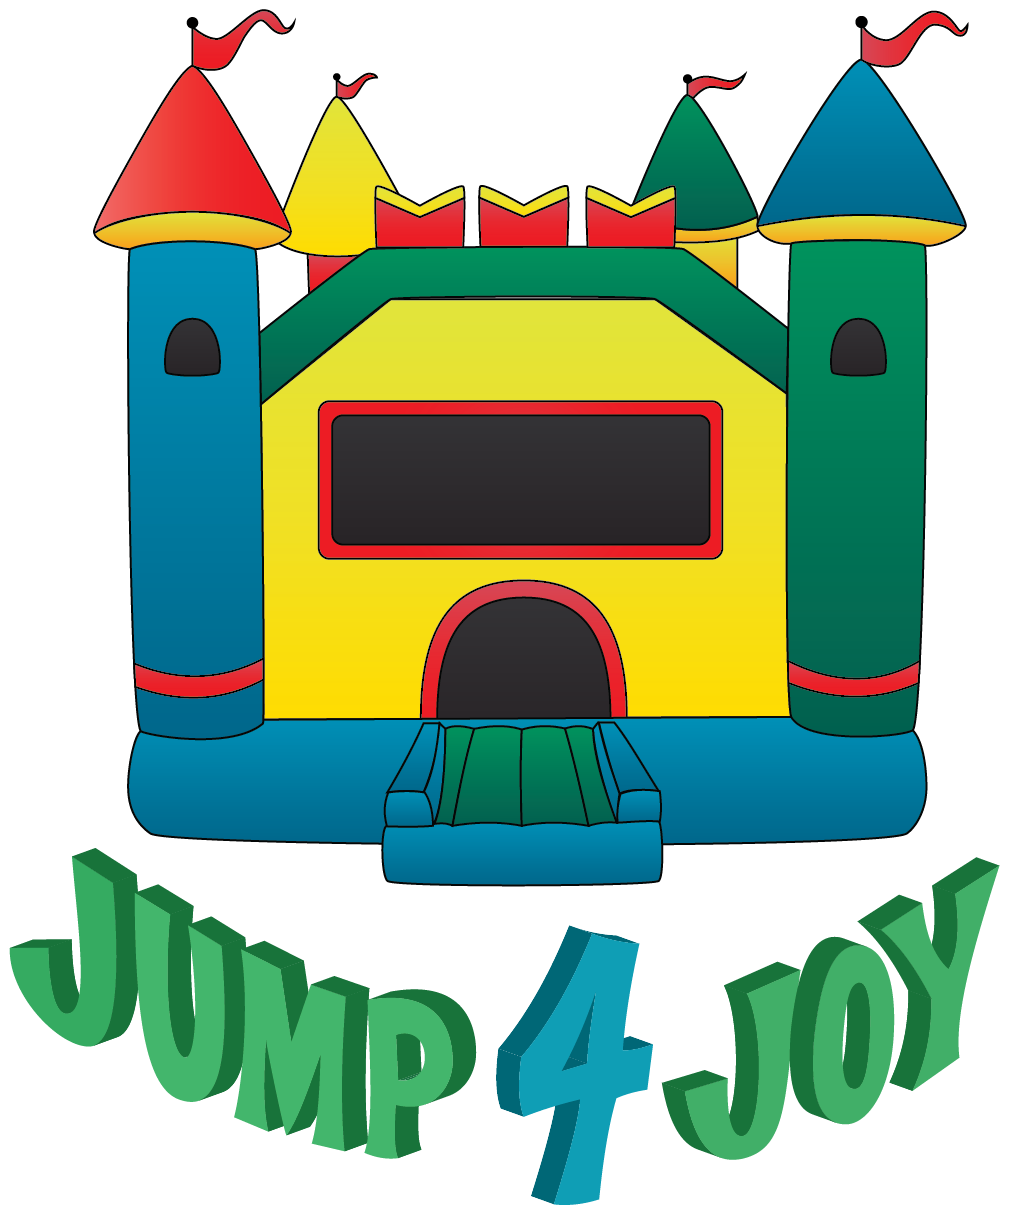 Jump 4 Joy Bouncy House Rentals